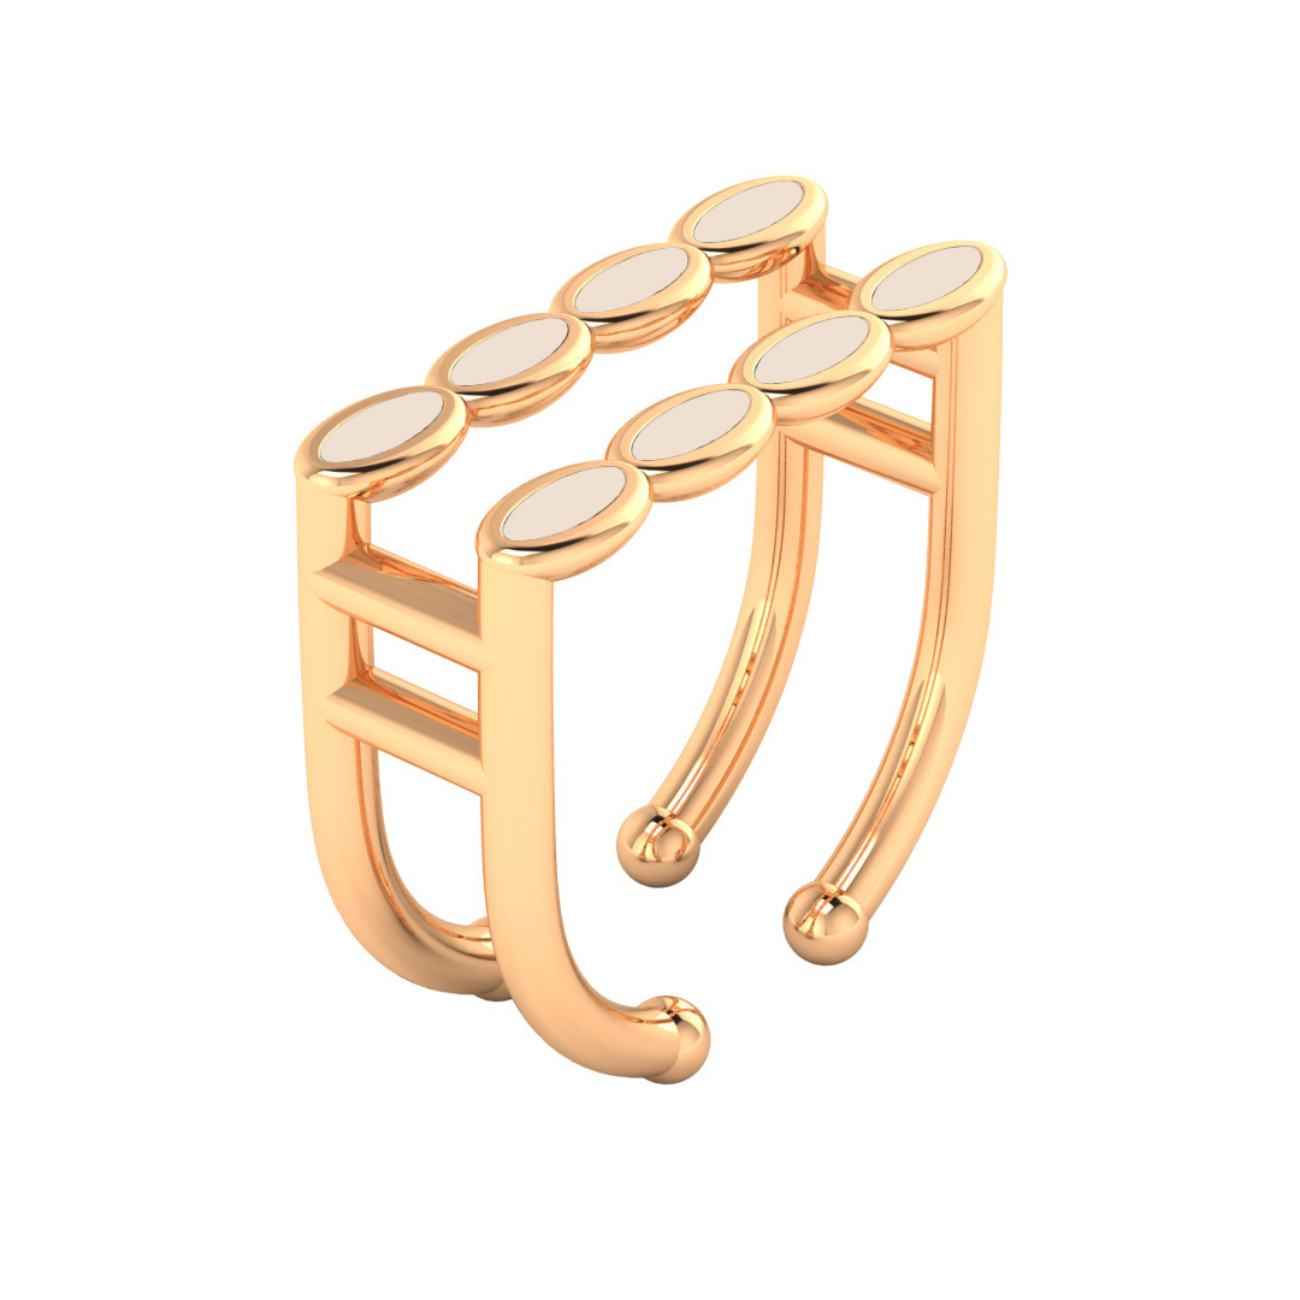 Amalei 18k gold ring